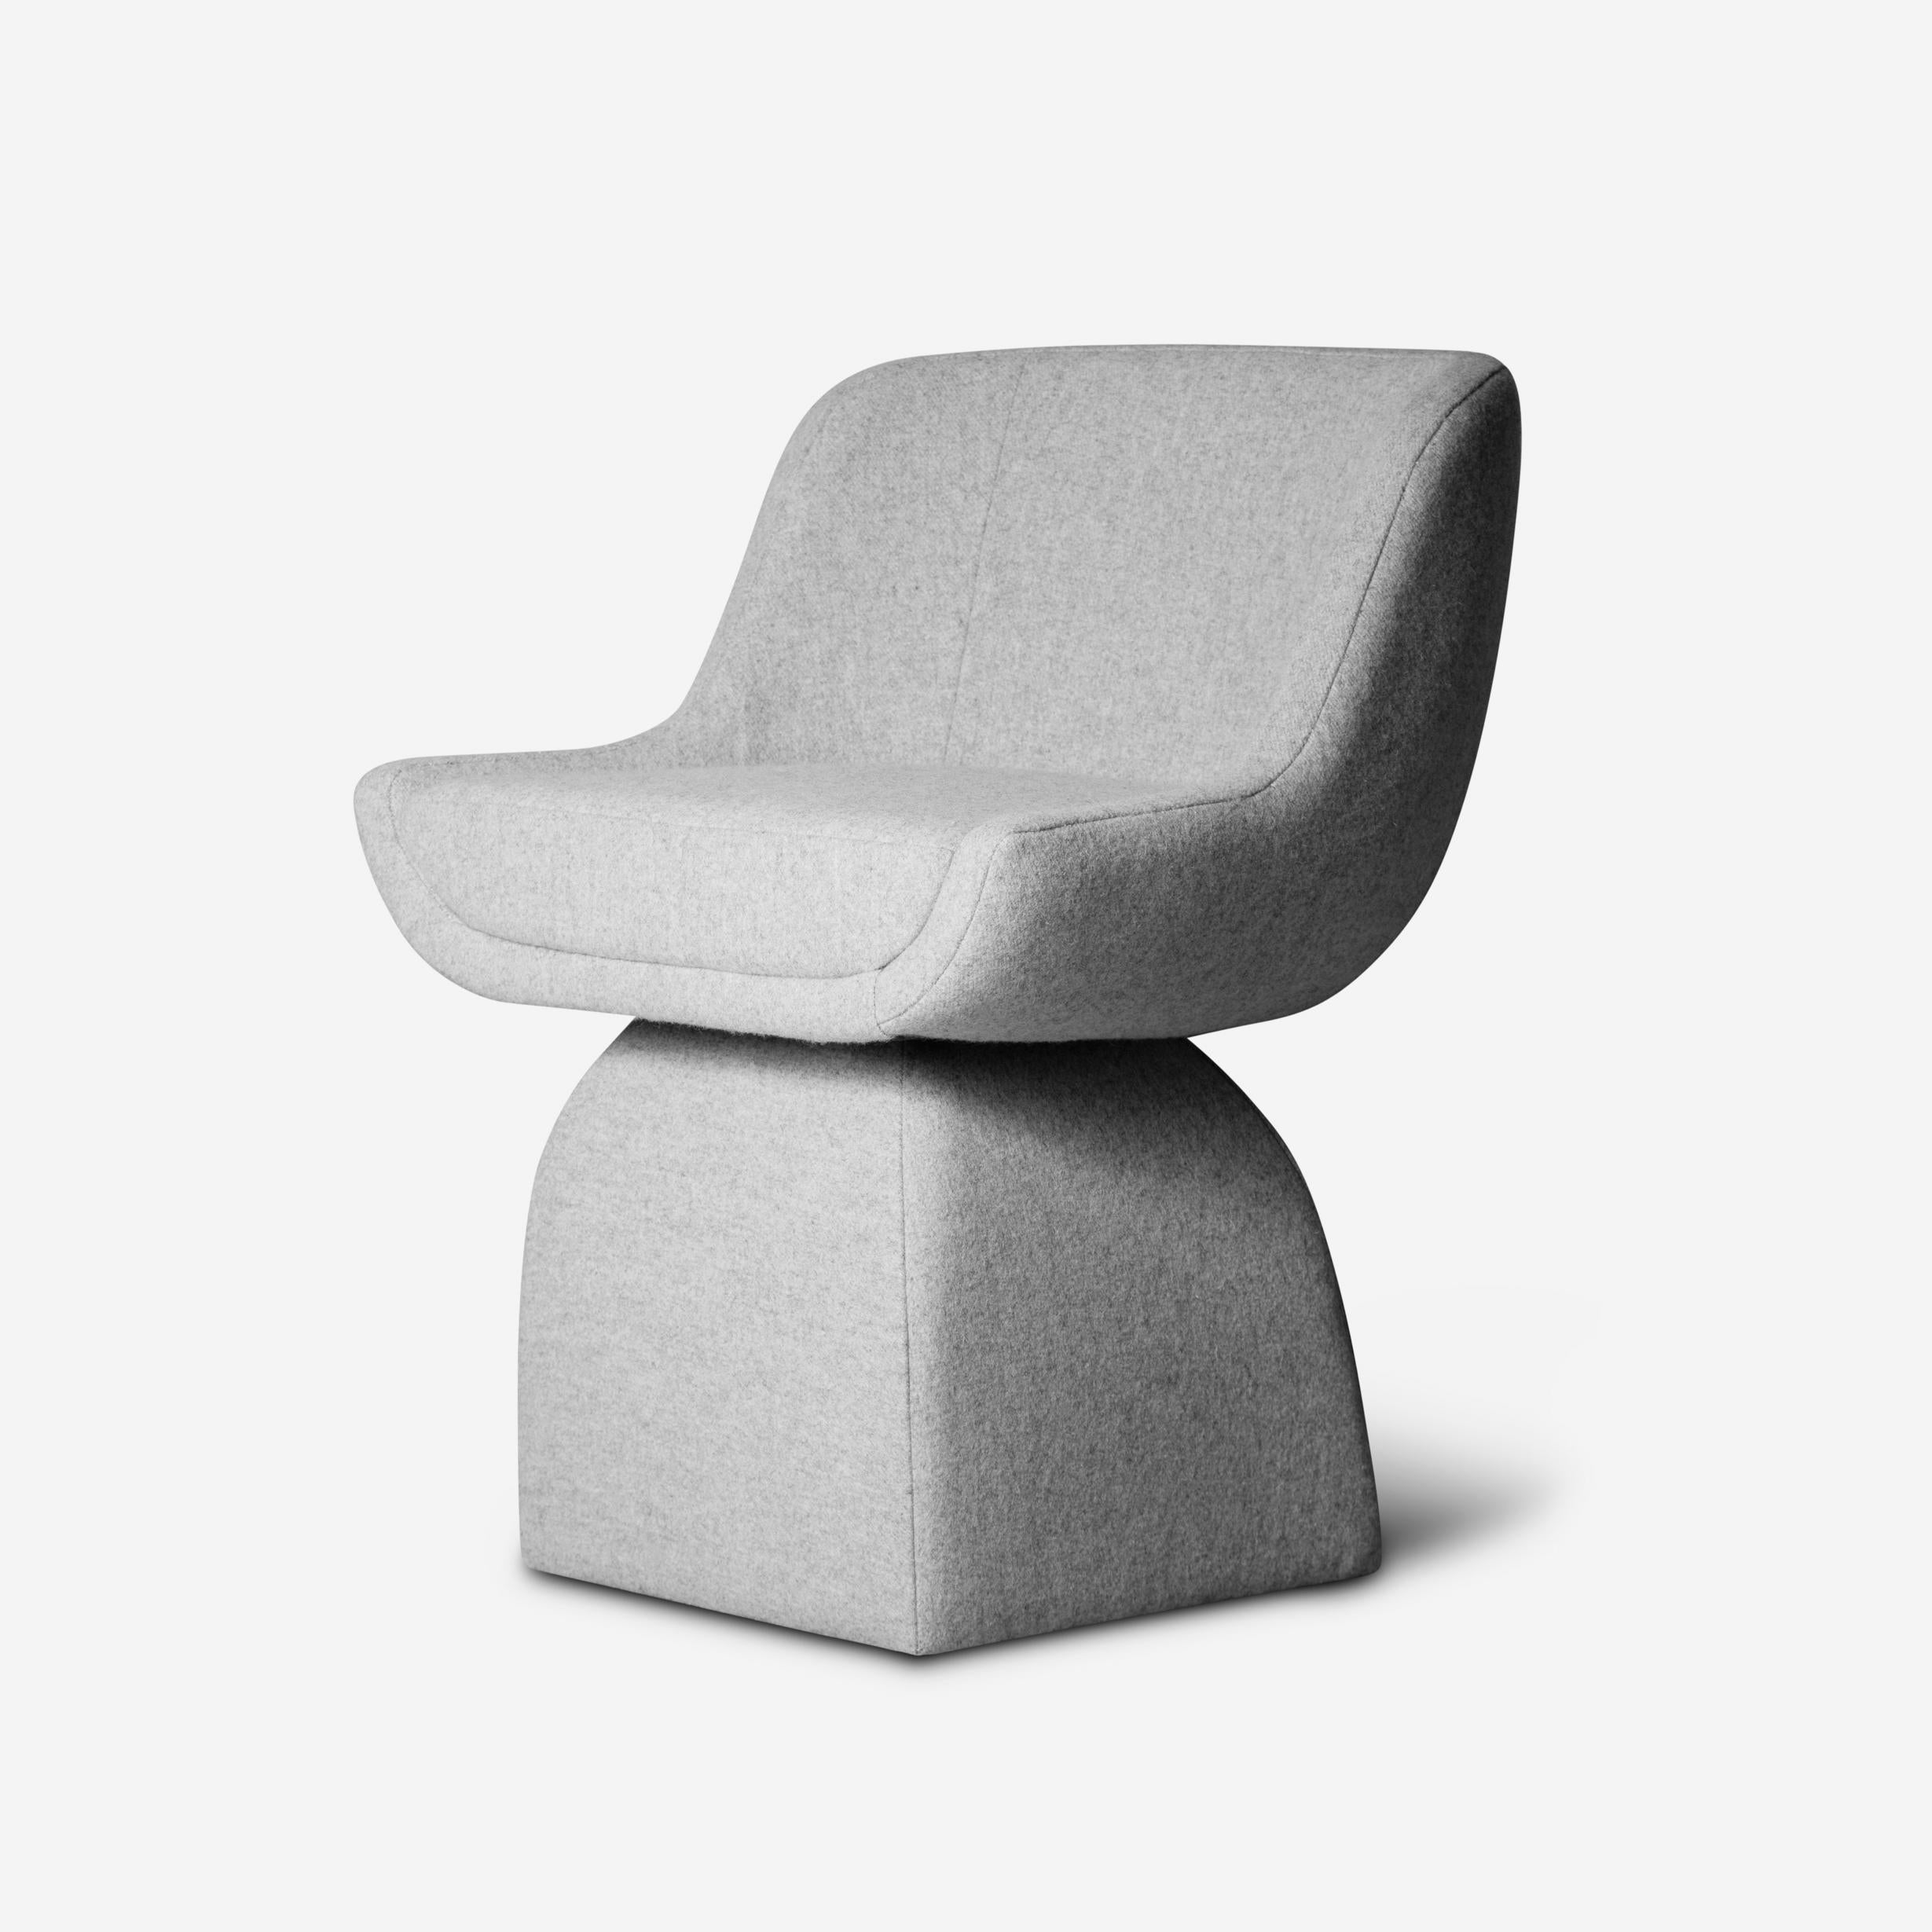 Petite chaise Oscar de DUISTT 
Dimensions : L 60 x D 58 x H 77 cm
MATERIAL : Tissu Duistt
Version pivotante disponible sur demande. Veuillez nous contacter.

Inspirée par la poésie des lignes courbes de l'architecture d'Oscar Niemeyer, la petite